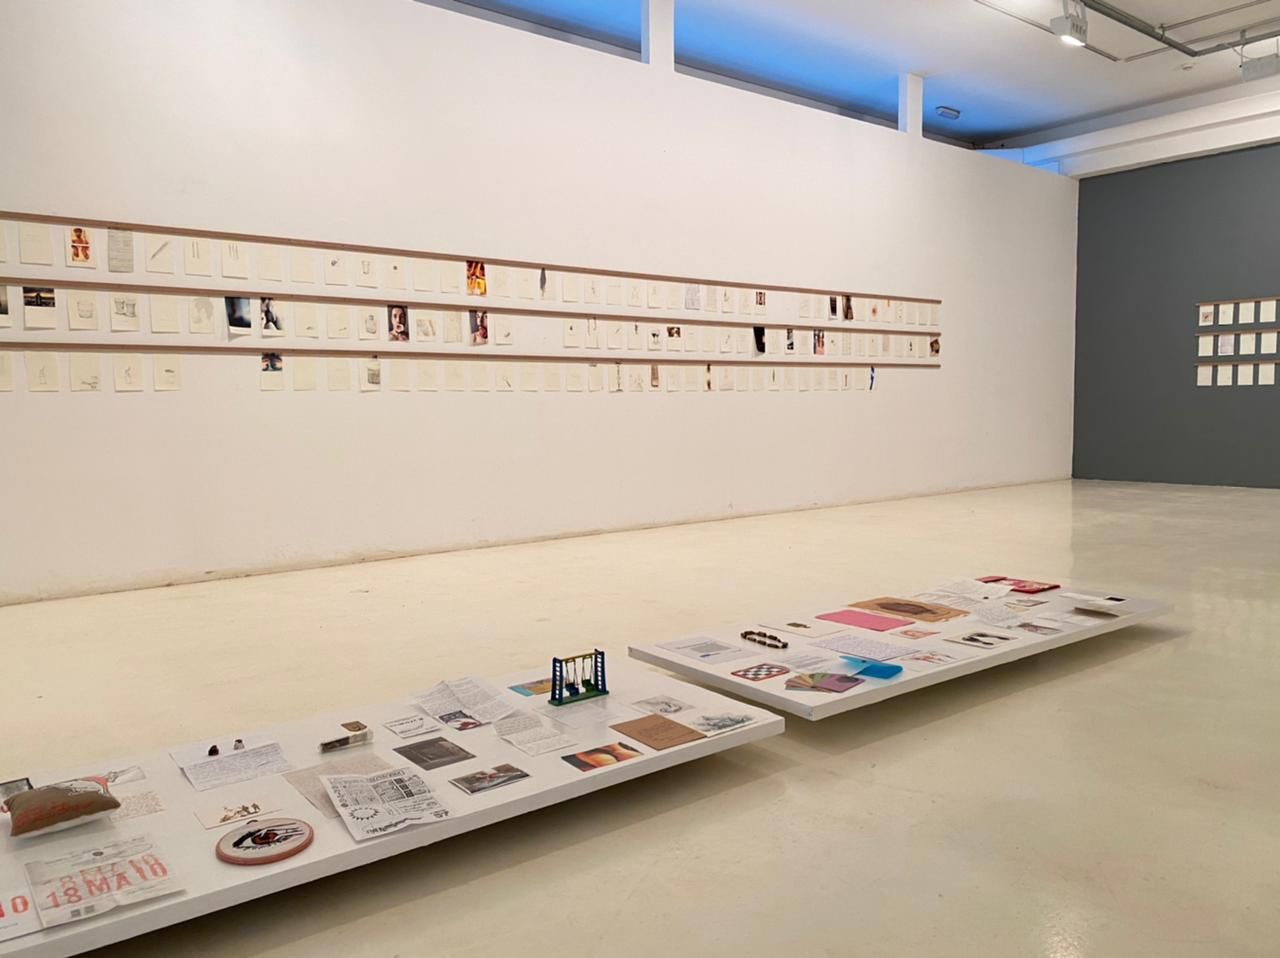 Museu de Arte Contemporânea de Campinas apresenta “Sobre Sub Solo” e “Diário 366”